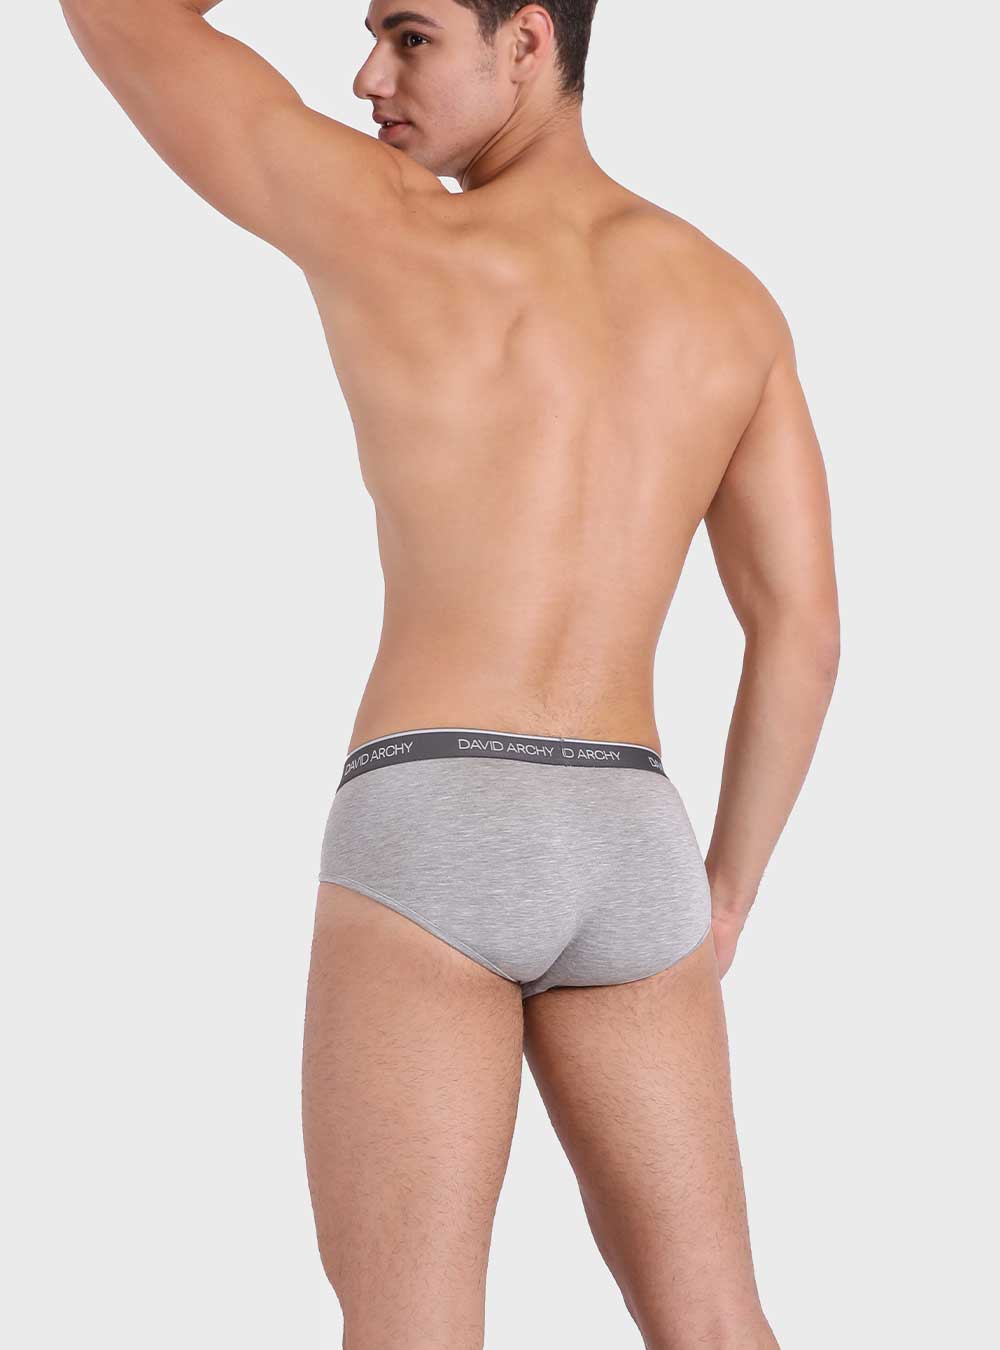 DAVID ARCHY Men's Underwear Bamboo Briefs Super Soft Comfort